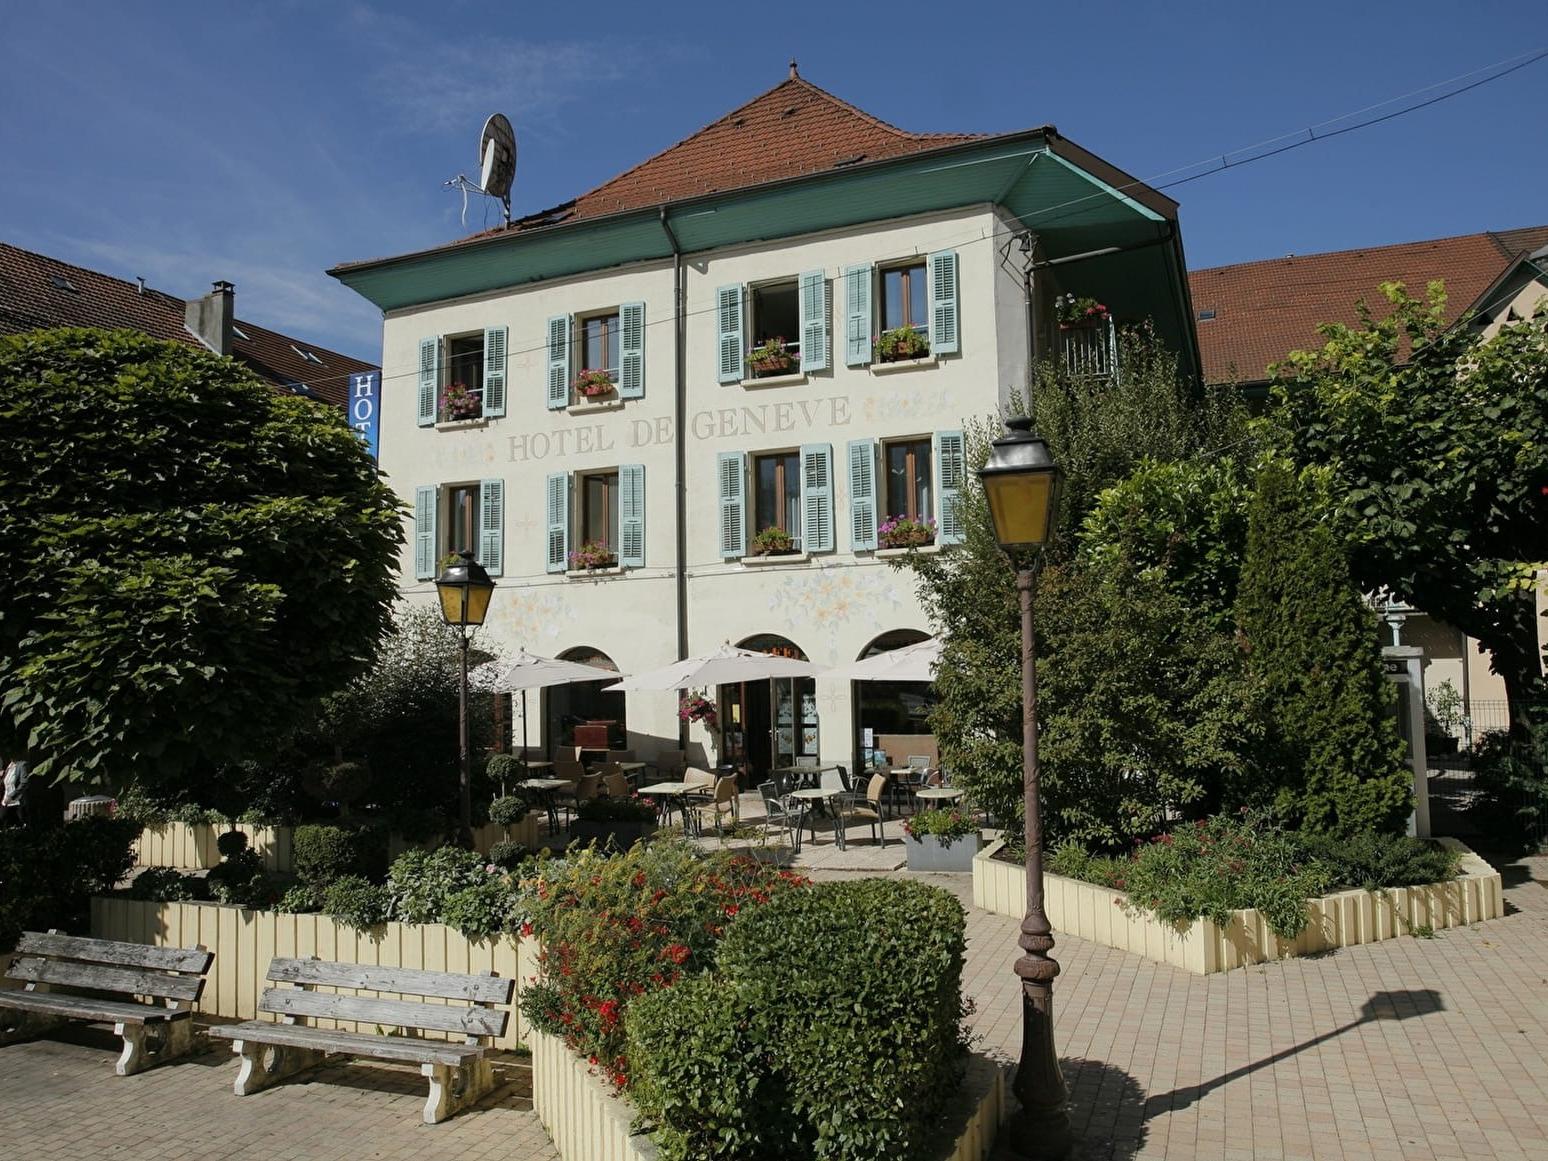 Hôtel de Genève Faverges, Haute Savoie